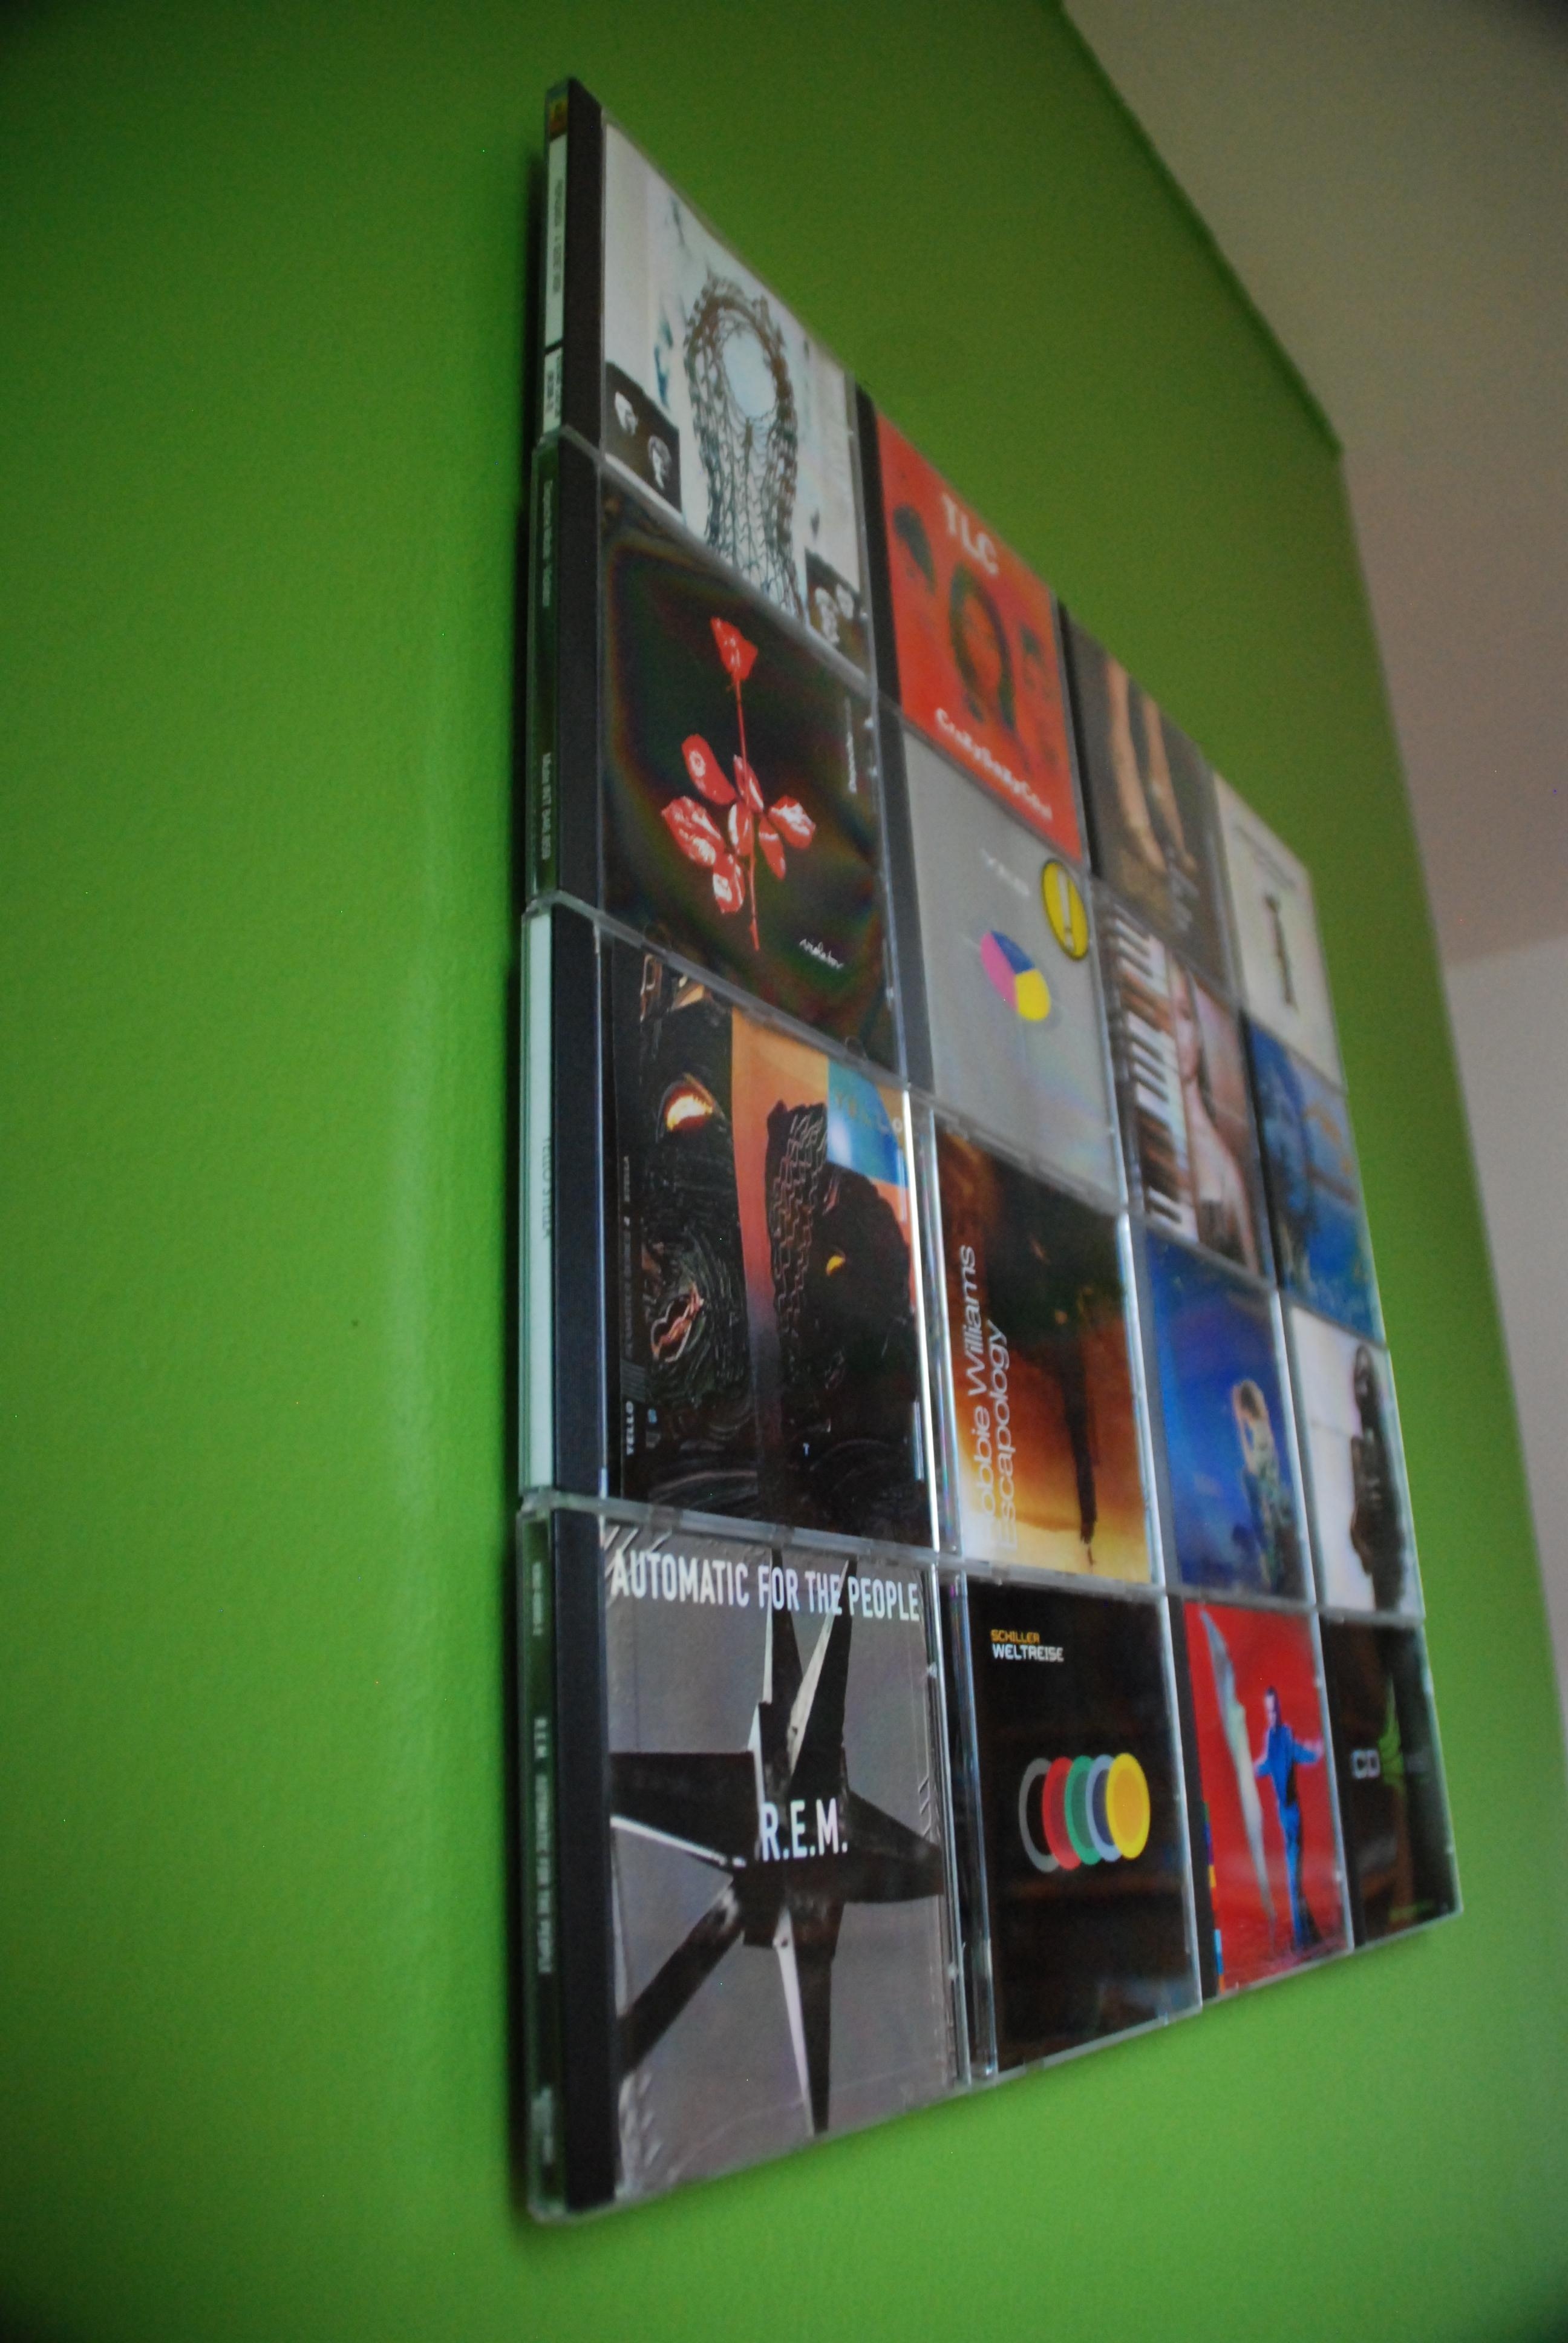 Meine CDs hängen als Bild an der Wand - wo versteckst du deine??
#Aufbewahrung #deko #regalwand #regale #wandregal